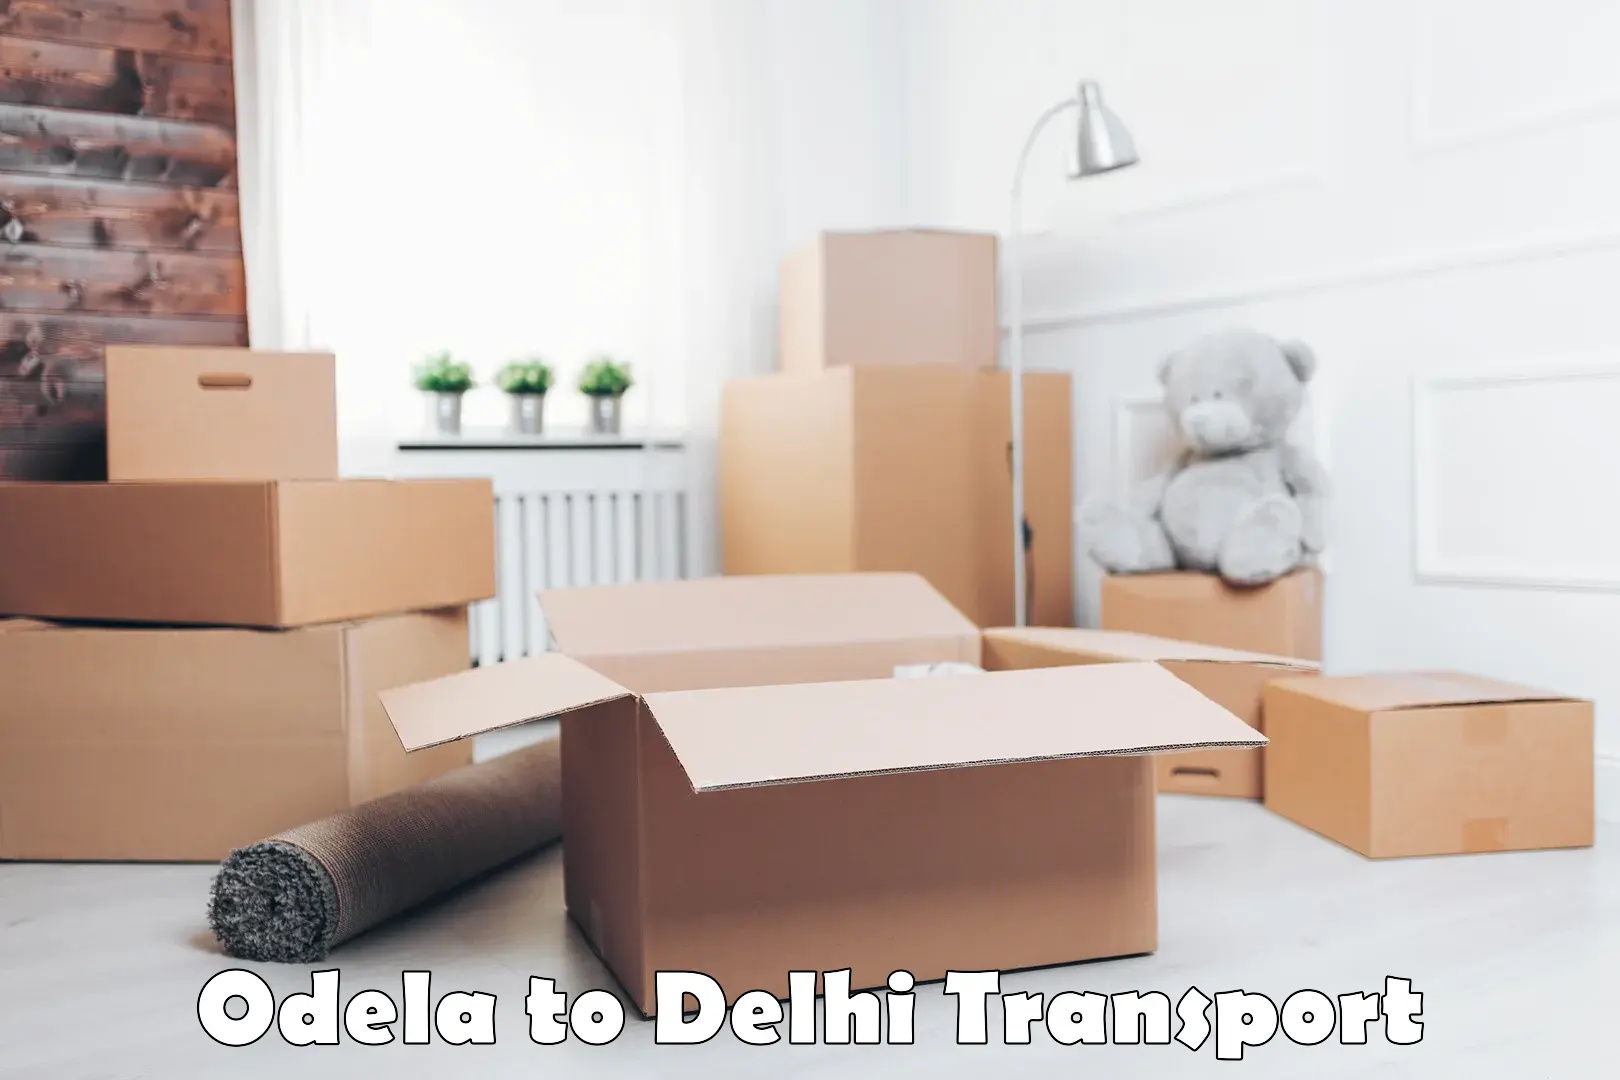 Parcel transport services Odela to East Delhi